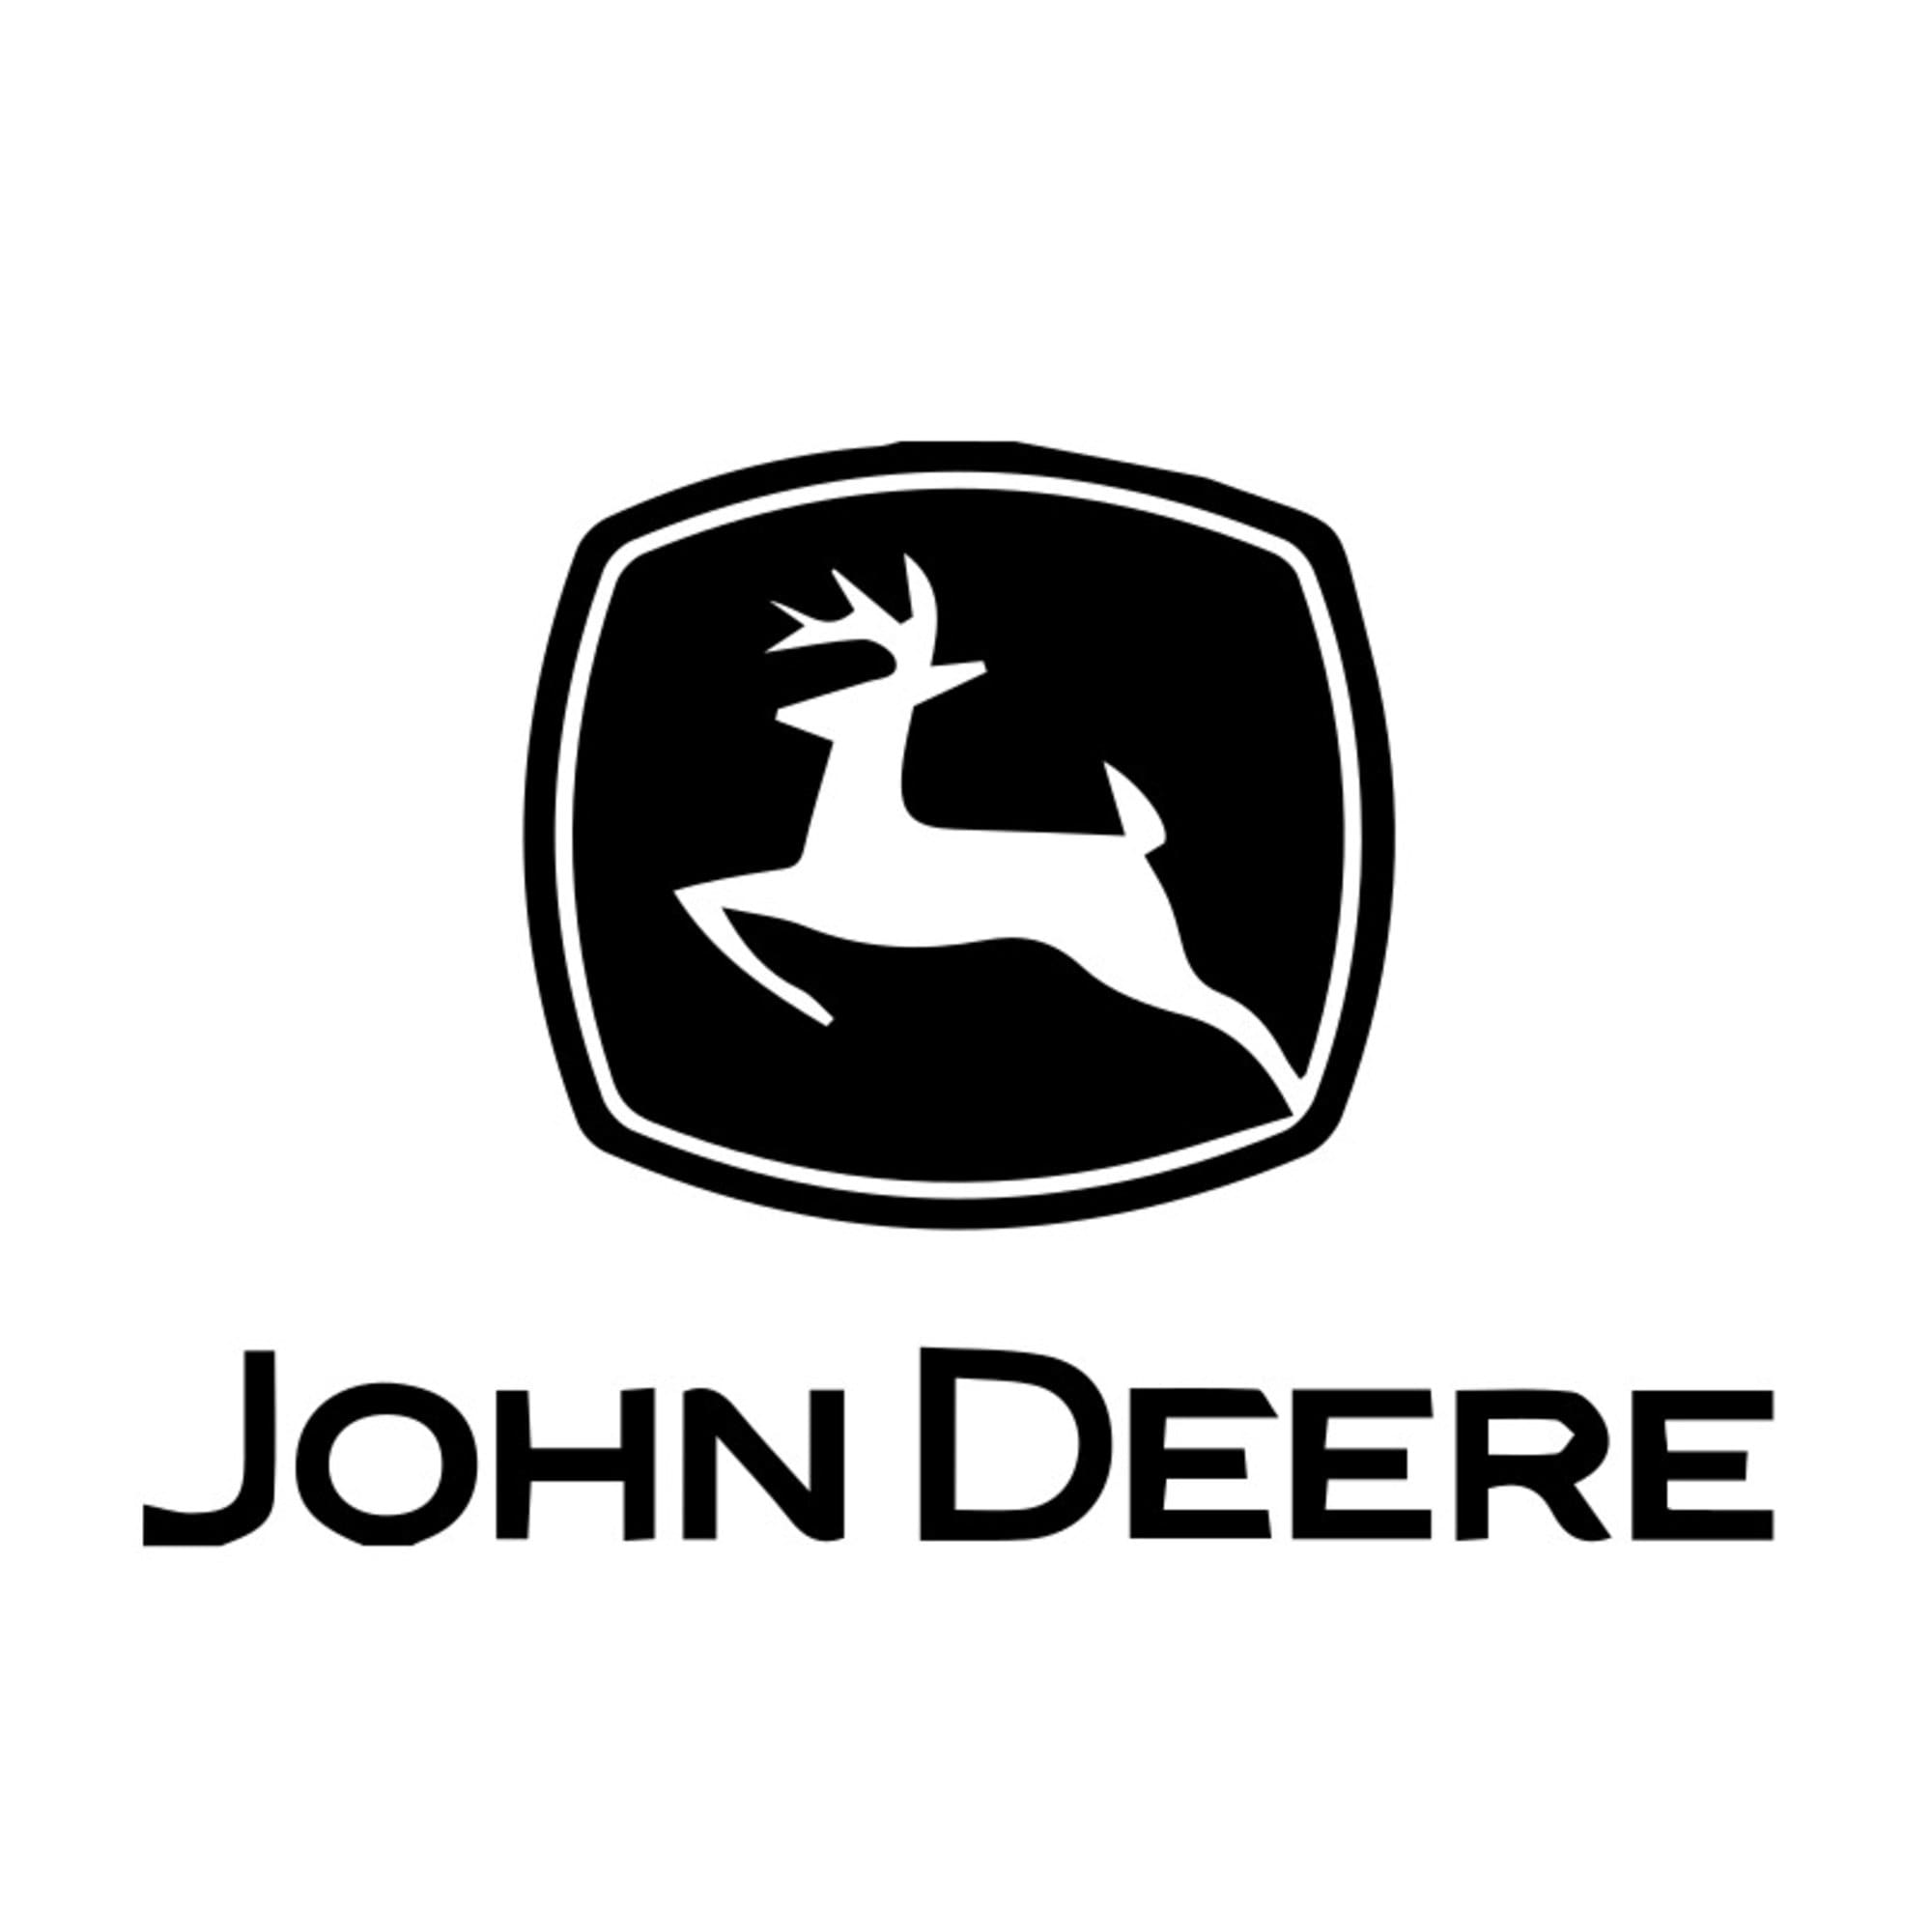 John deer svg for sale  